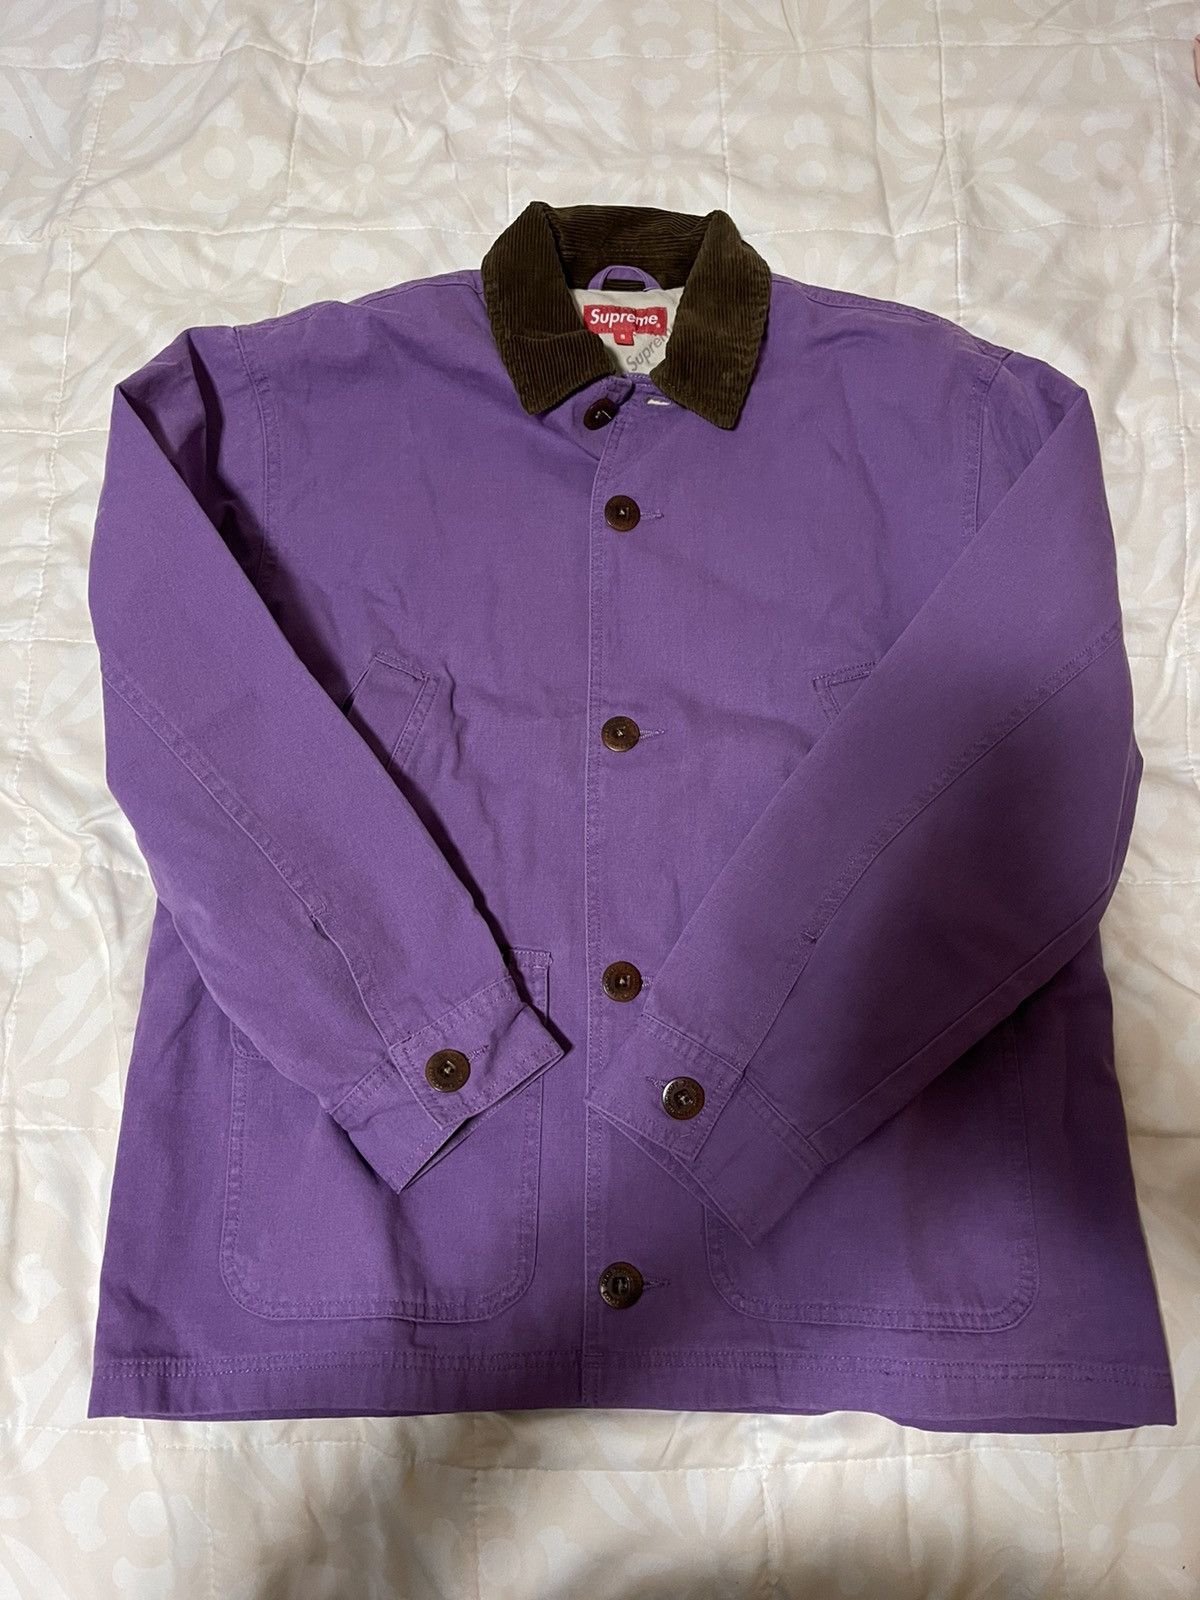 決算特価商品 supreme barn バーン Barn Supreme coat purple メンズ